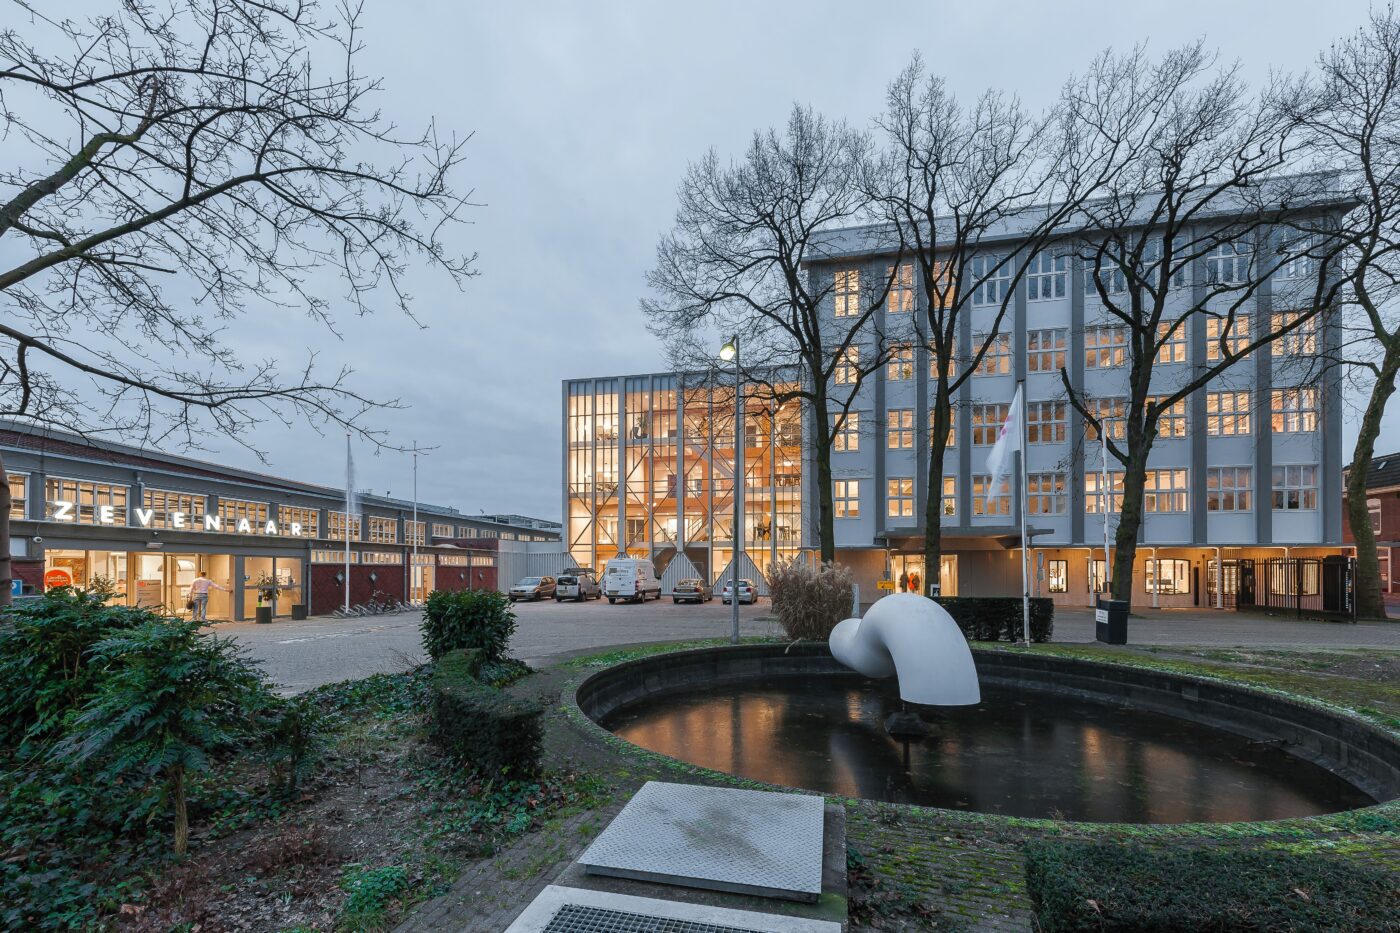 De tot gemeentehuis getransformeerde BAT-fabriek heeft een nieuw, verbindend bouwdeel met een vliesgevelindeling, die verwijst naar de patronen in de bakstenen gevel van Hal 12. (Foto: Jan de Vries)